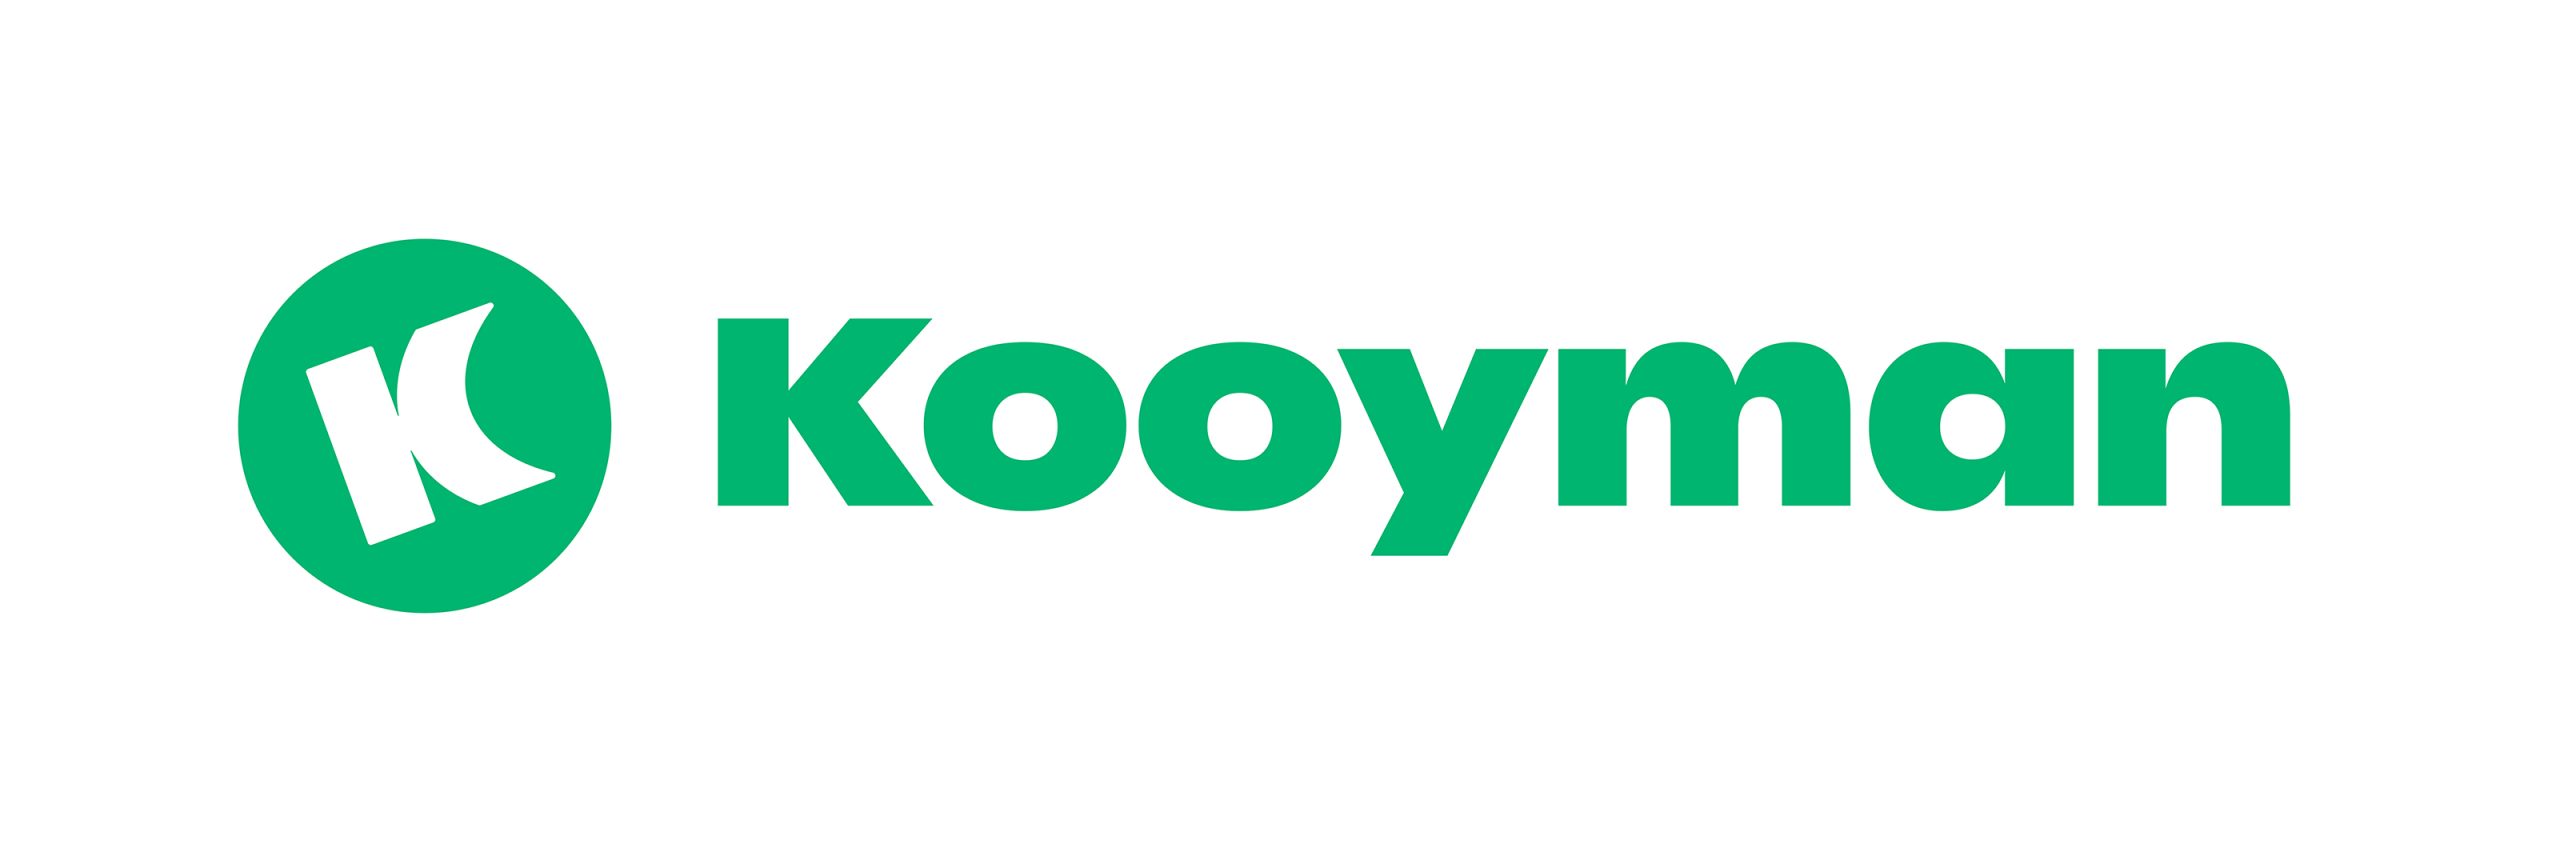 Kooyman_Logo_RGB_2_Green_on_White-1600